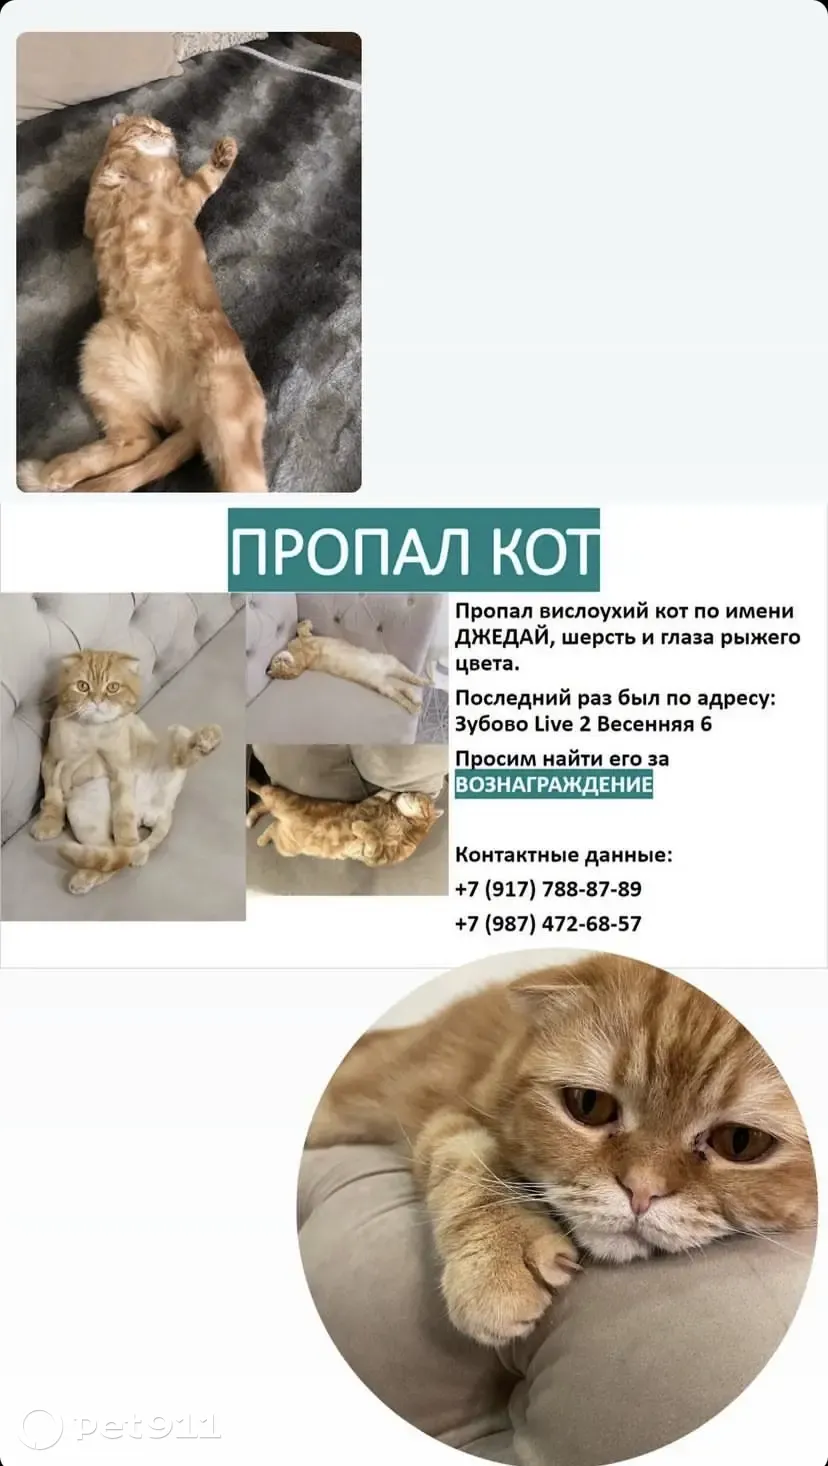 Пропал вислоухий кот в Зубово, Башкортостан | Pet911.ru